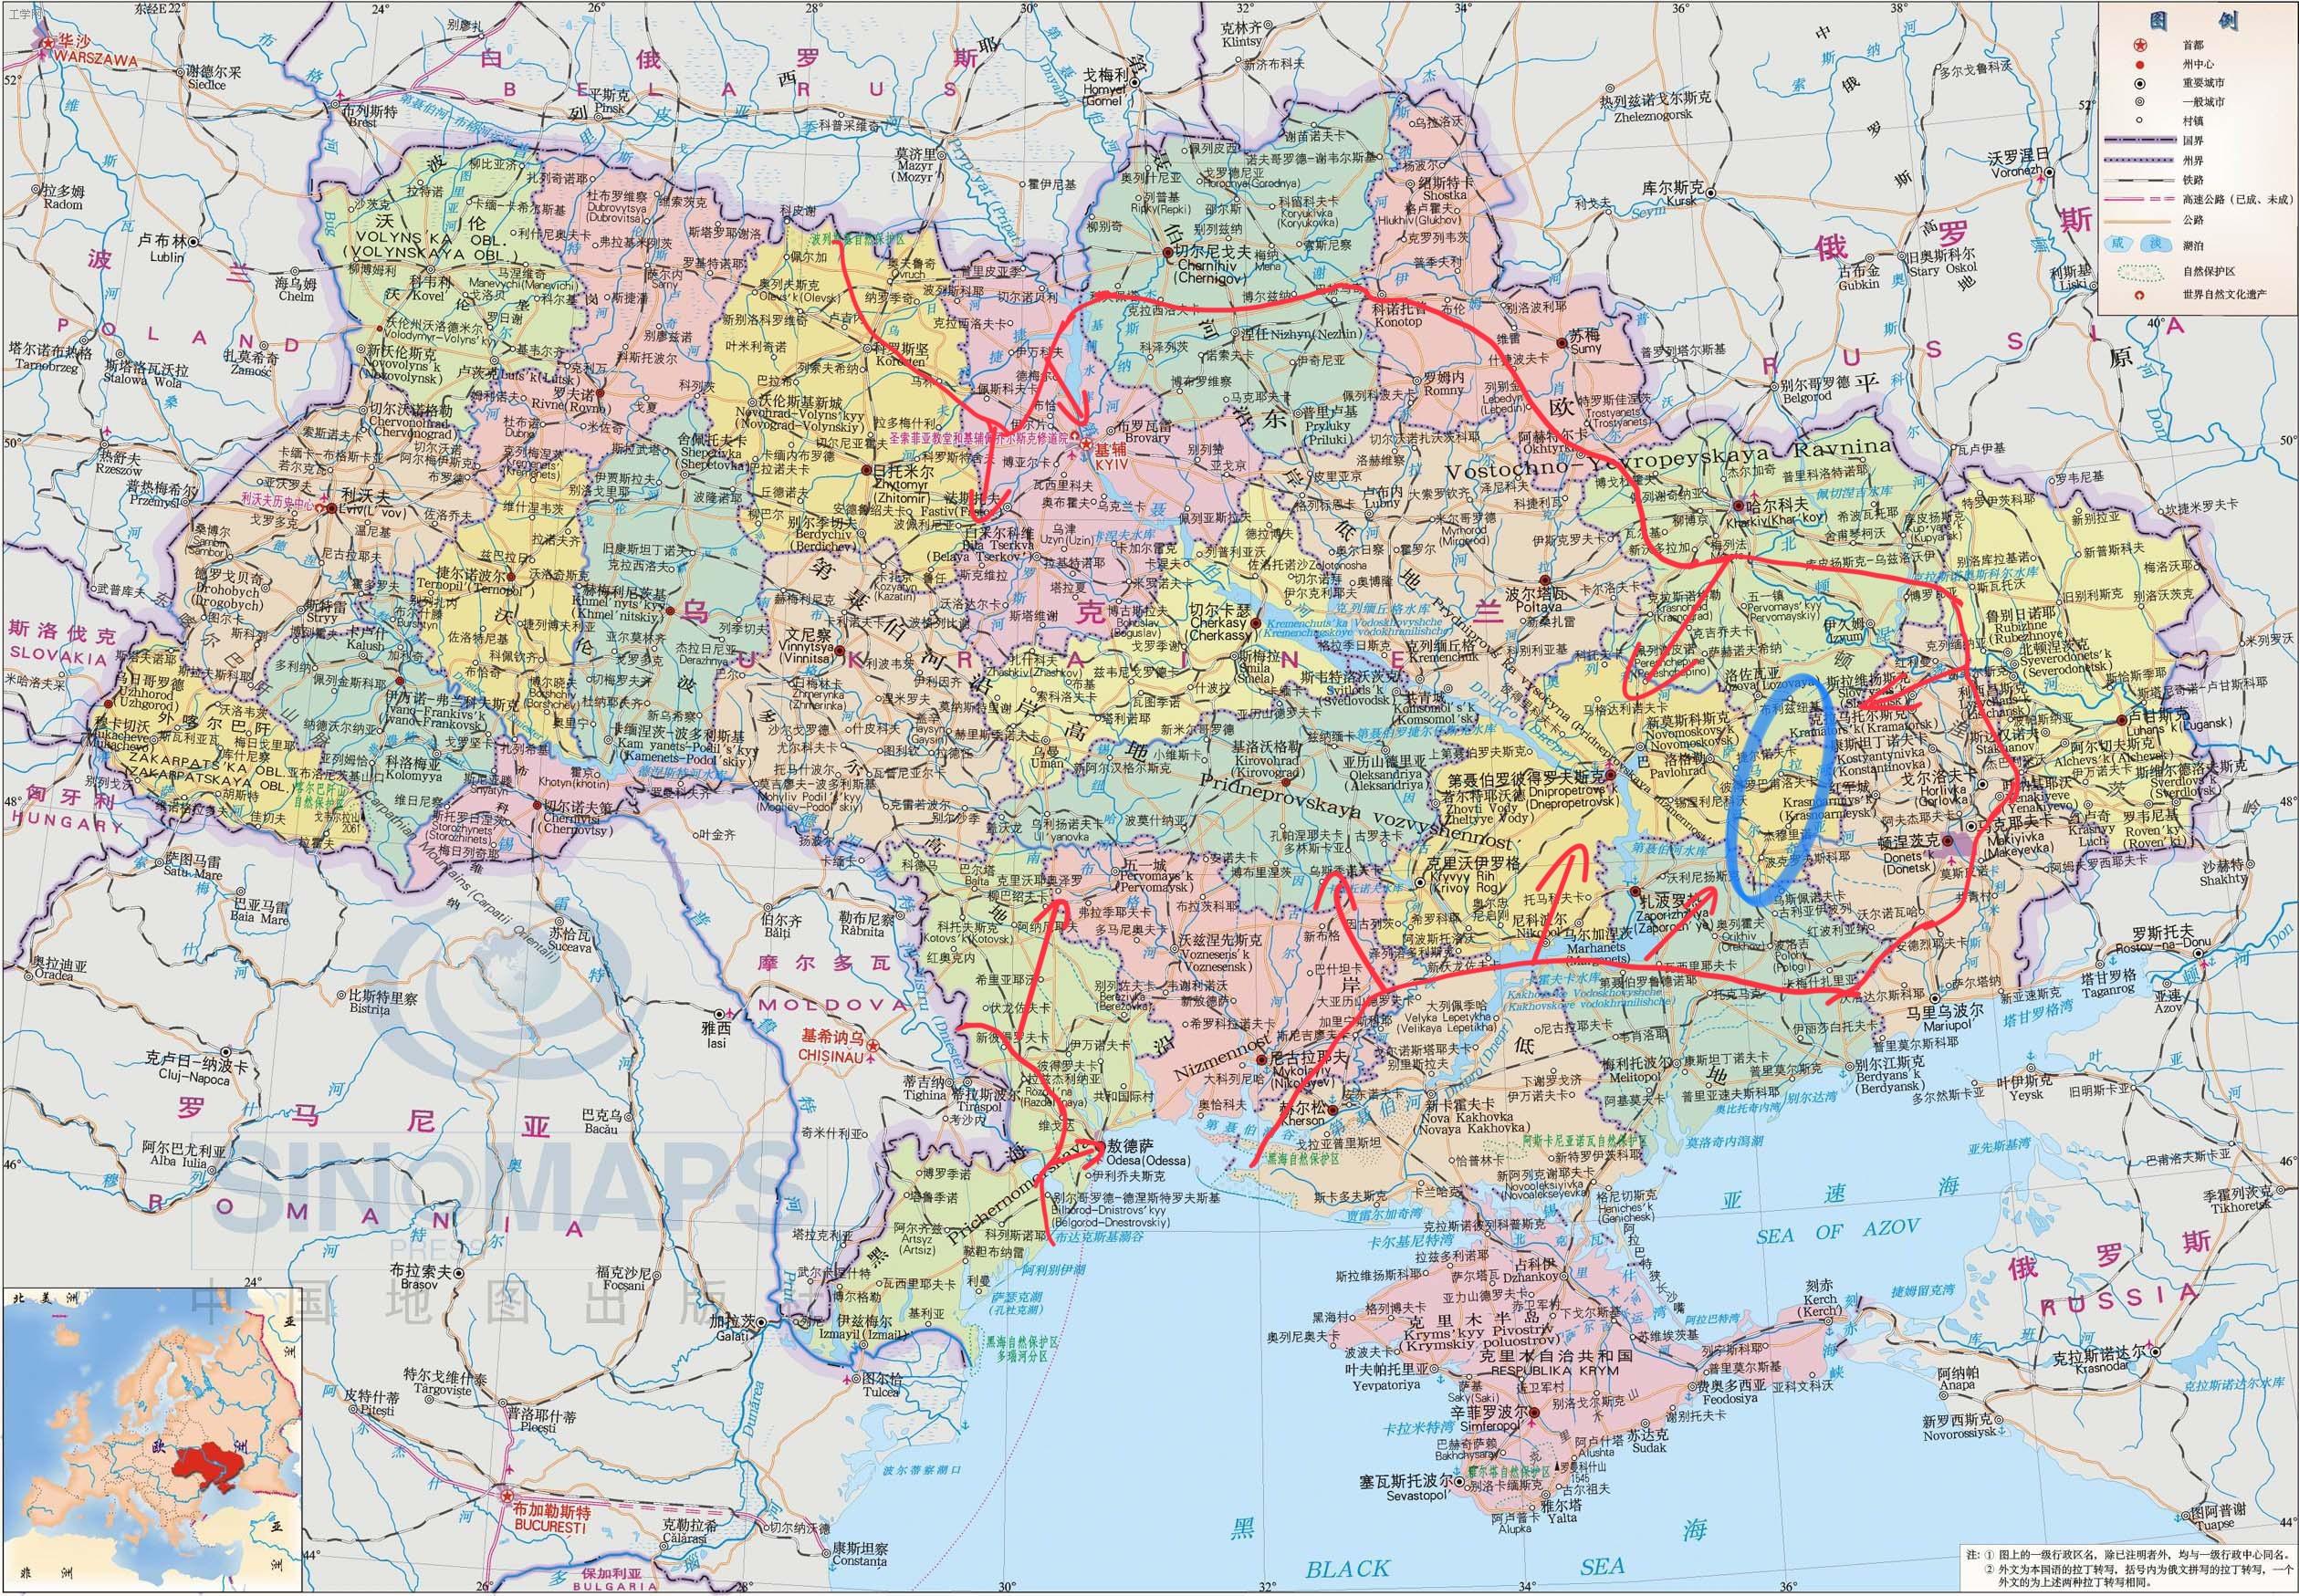 从俄军在乌克兰的进军路线不难看出来,俄罗斯方面意图在乌东打大范围